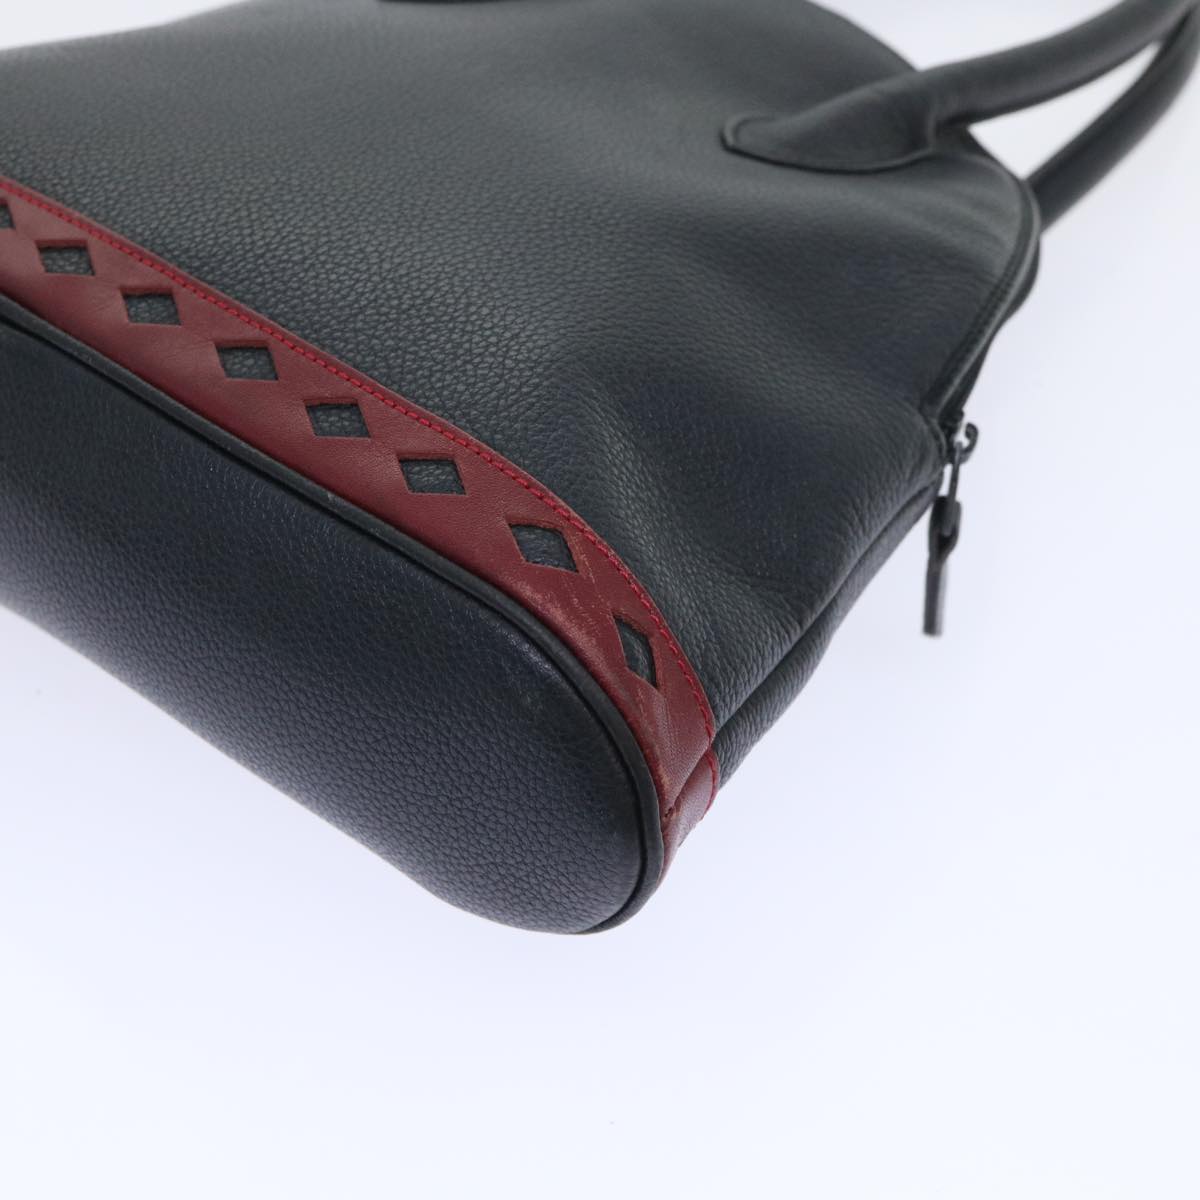 SAINT LAURENT Hand Bag Leather Black Auth bs8423